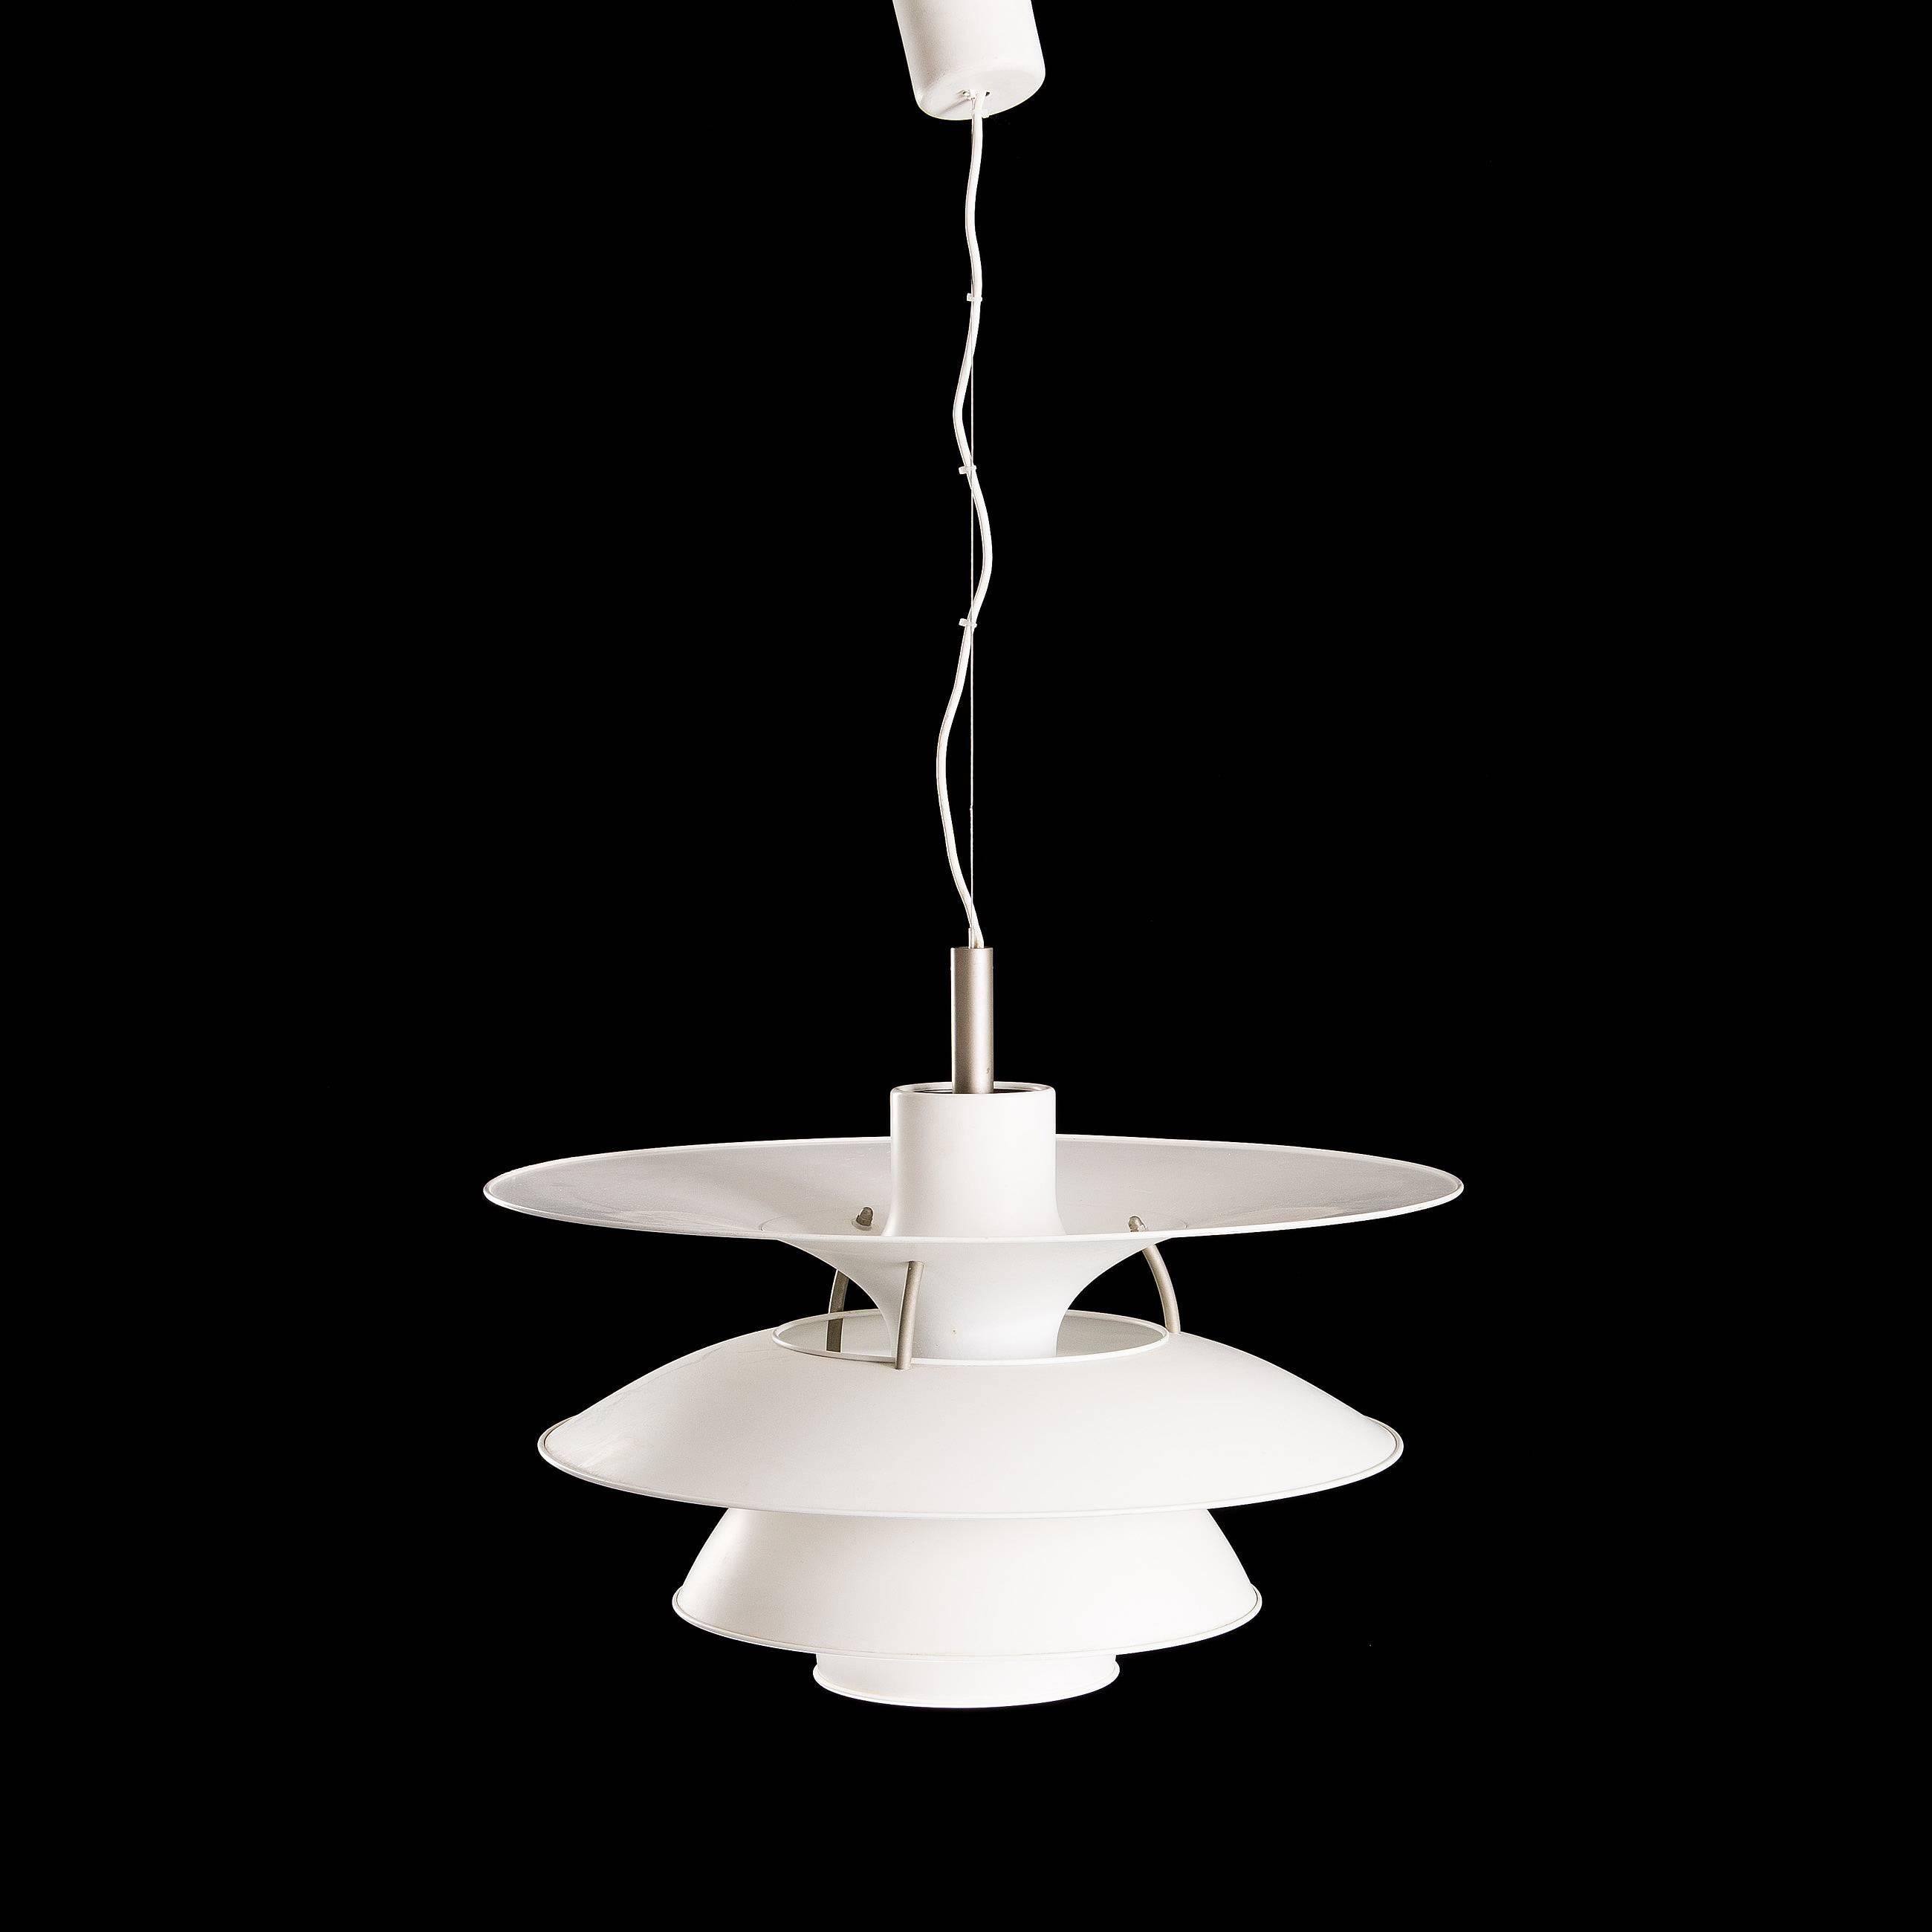 Das größte Modell der Poul Henningsen PH Lampen PH 6½-6 Pendelleuchte mit weiß lackierten Metallschirmen. 
Poul Henningsen entwarf die Leuchte für das Ausstellungsgebäude Charlottenborg in Kopenhagen. Die Lampe ist mit einer E40-Fassung für max.